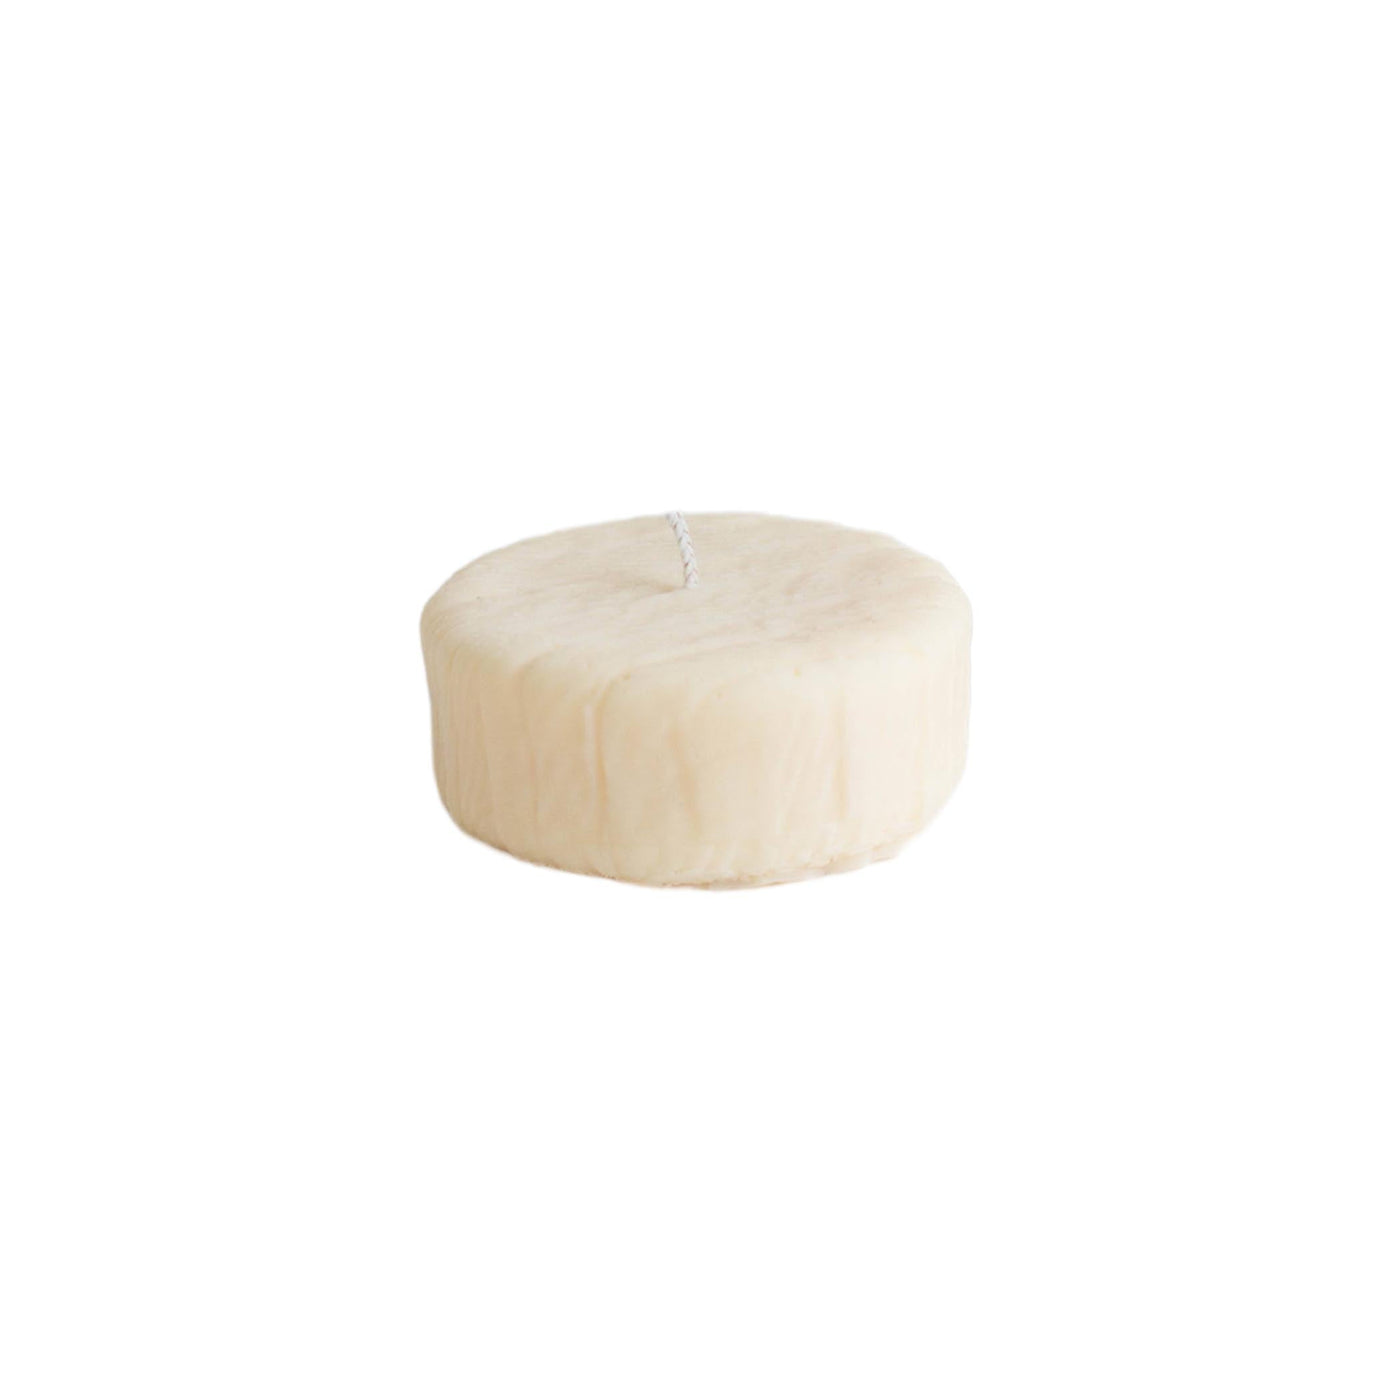 Éveillez vos sens avec la bougie camembert de Nata Concept Store. Compacte et irrésistible, elle séduit les amateurs de fromage tout en créant une ambiance conviviale.